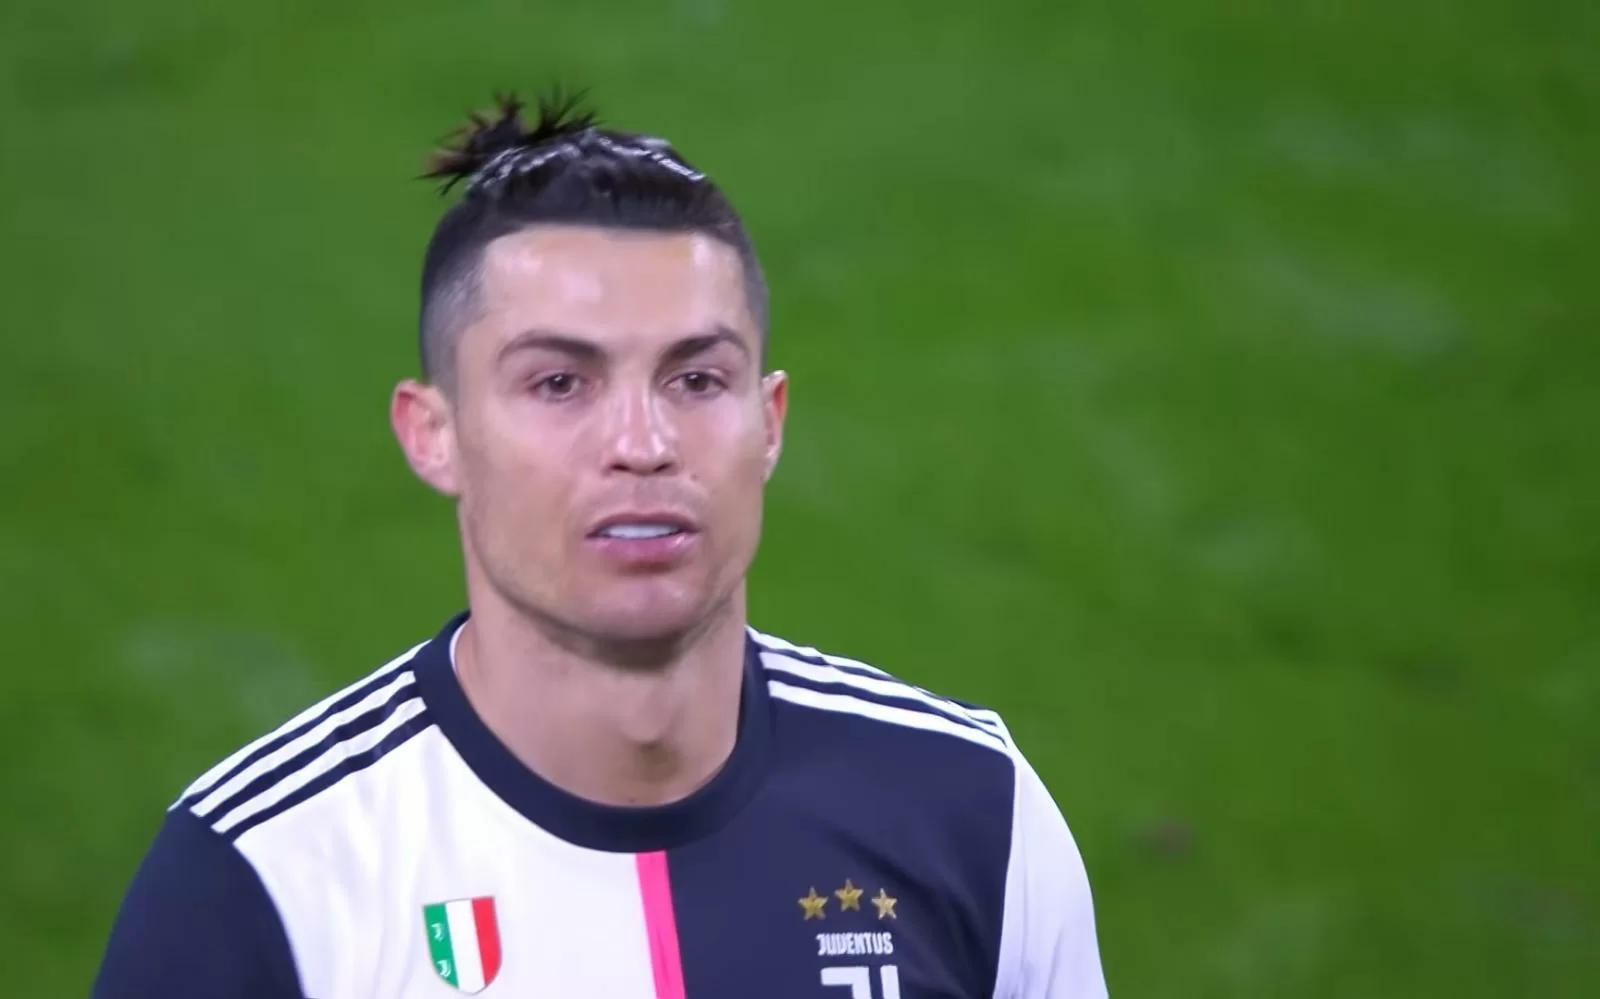 Sportmediaset – Possibile rinnovo contrattuale per Cristiano Ronaldo, ma occhio al bilancio